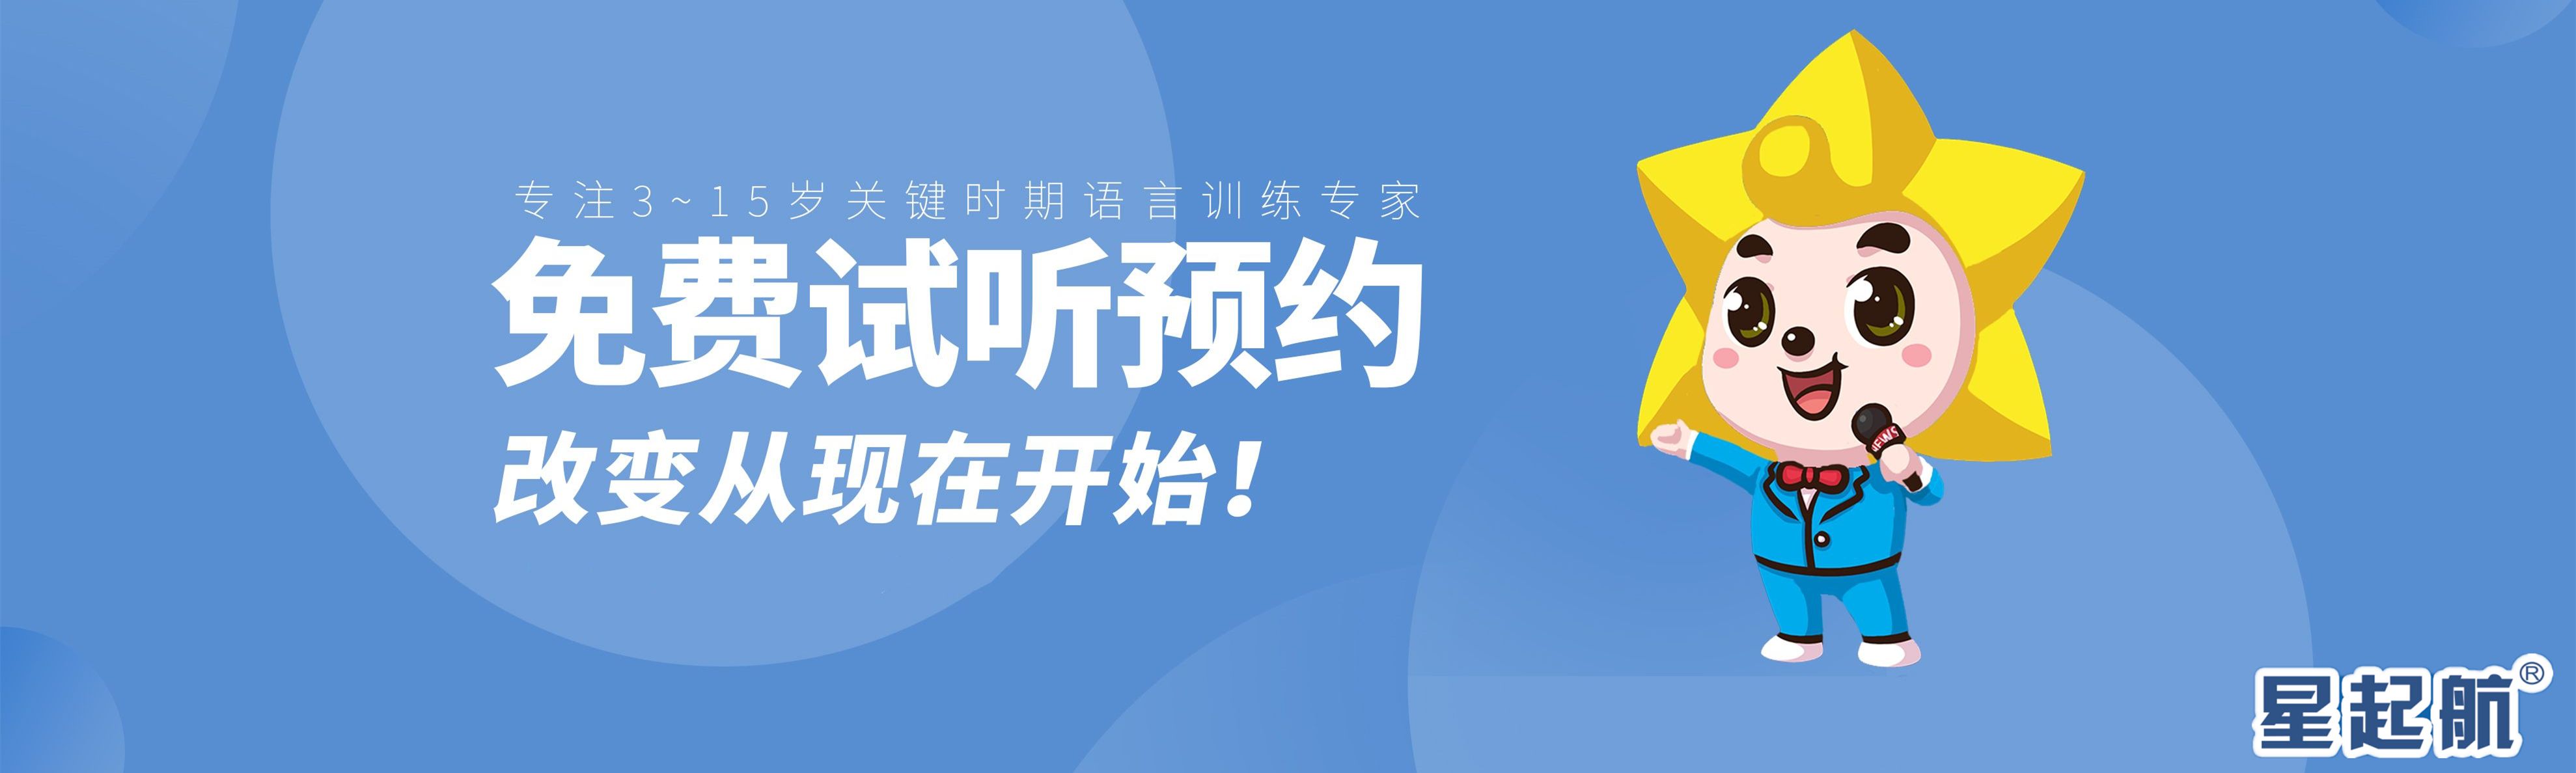 重庆星起航语言培训中心